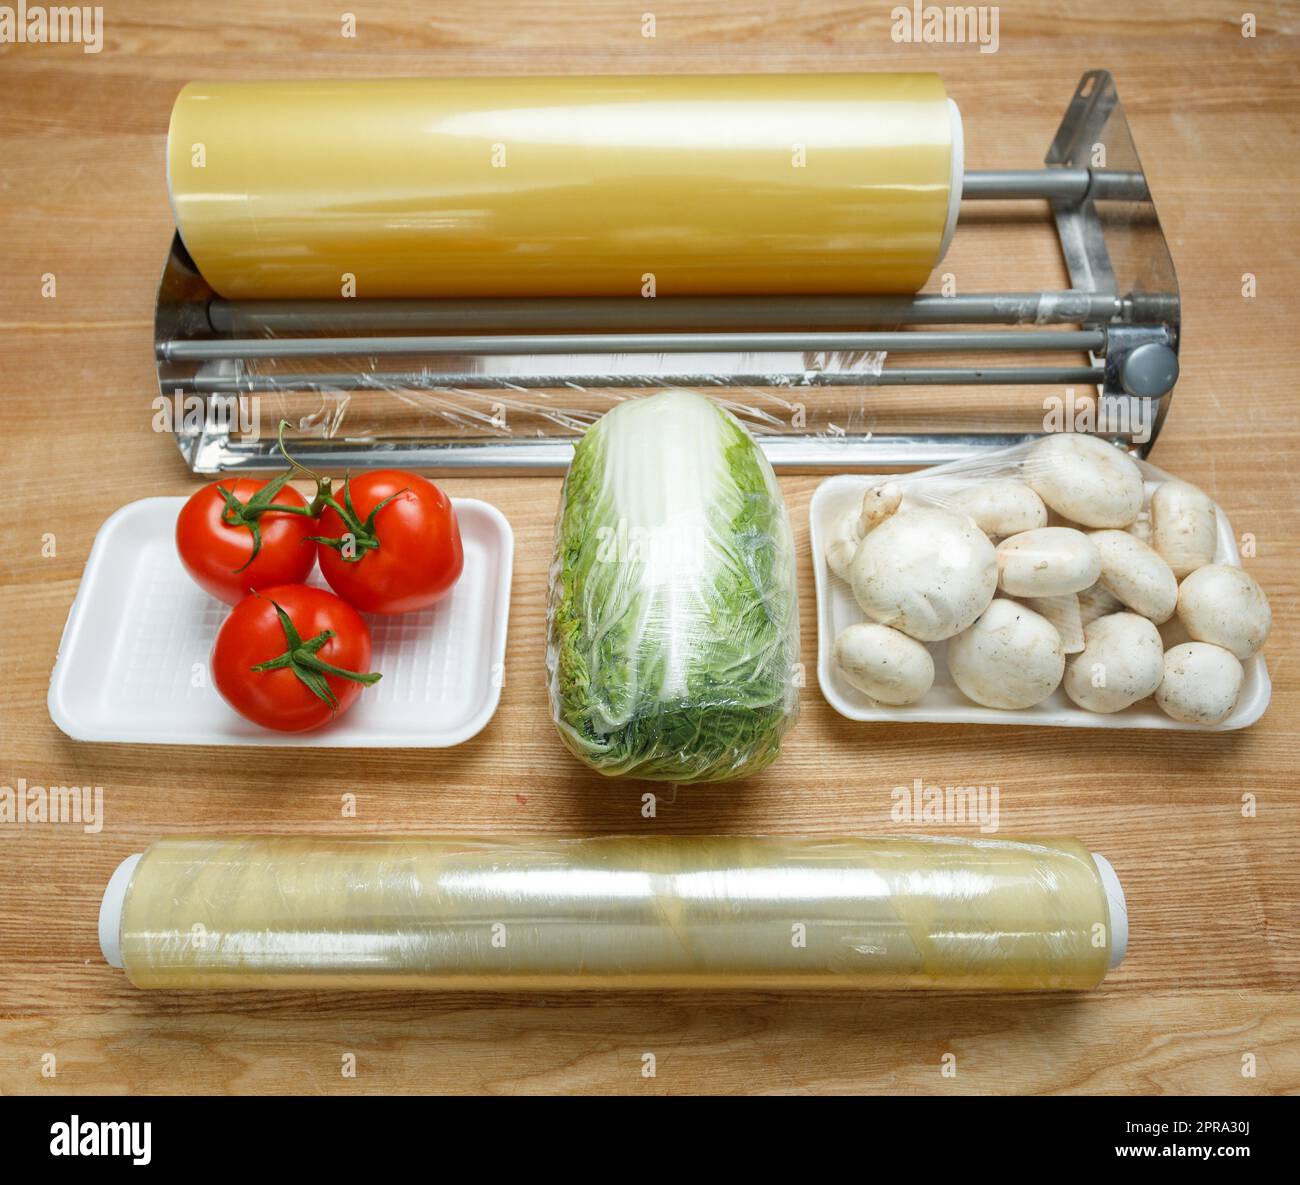 Rollen aus transparenter Polyethylen-Lebensmittelfolie zum Verpacken von Lebensmitteln auf dem Tisch mit Gemüse. Stockfoto